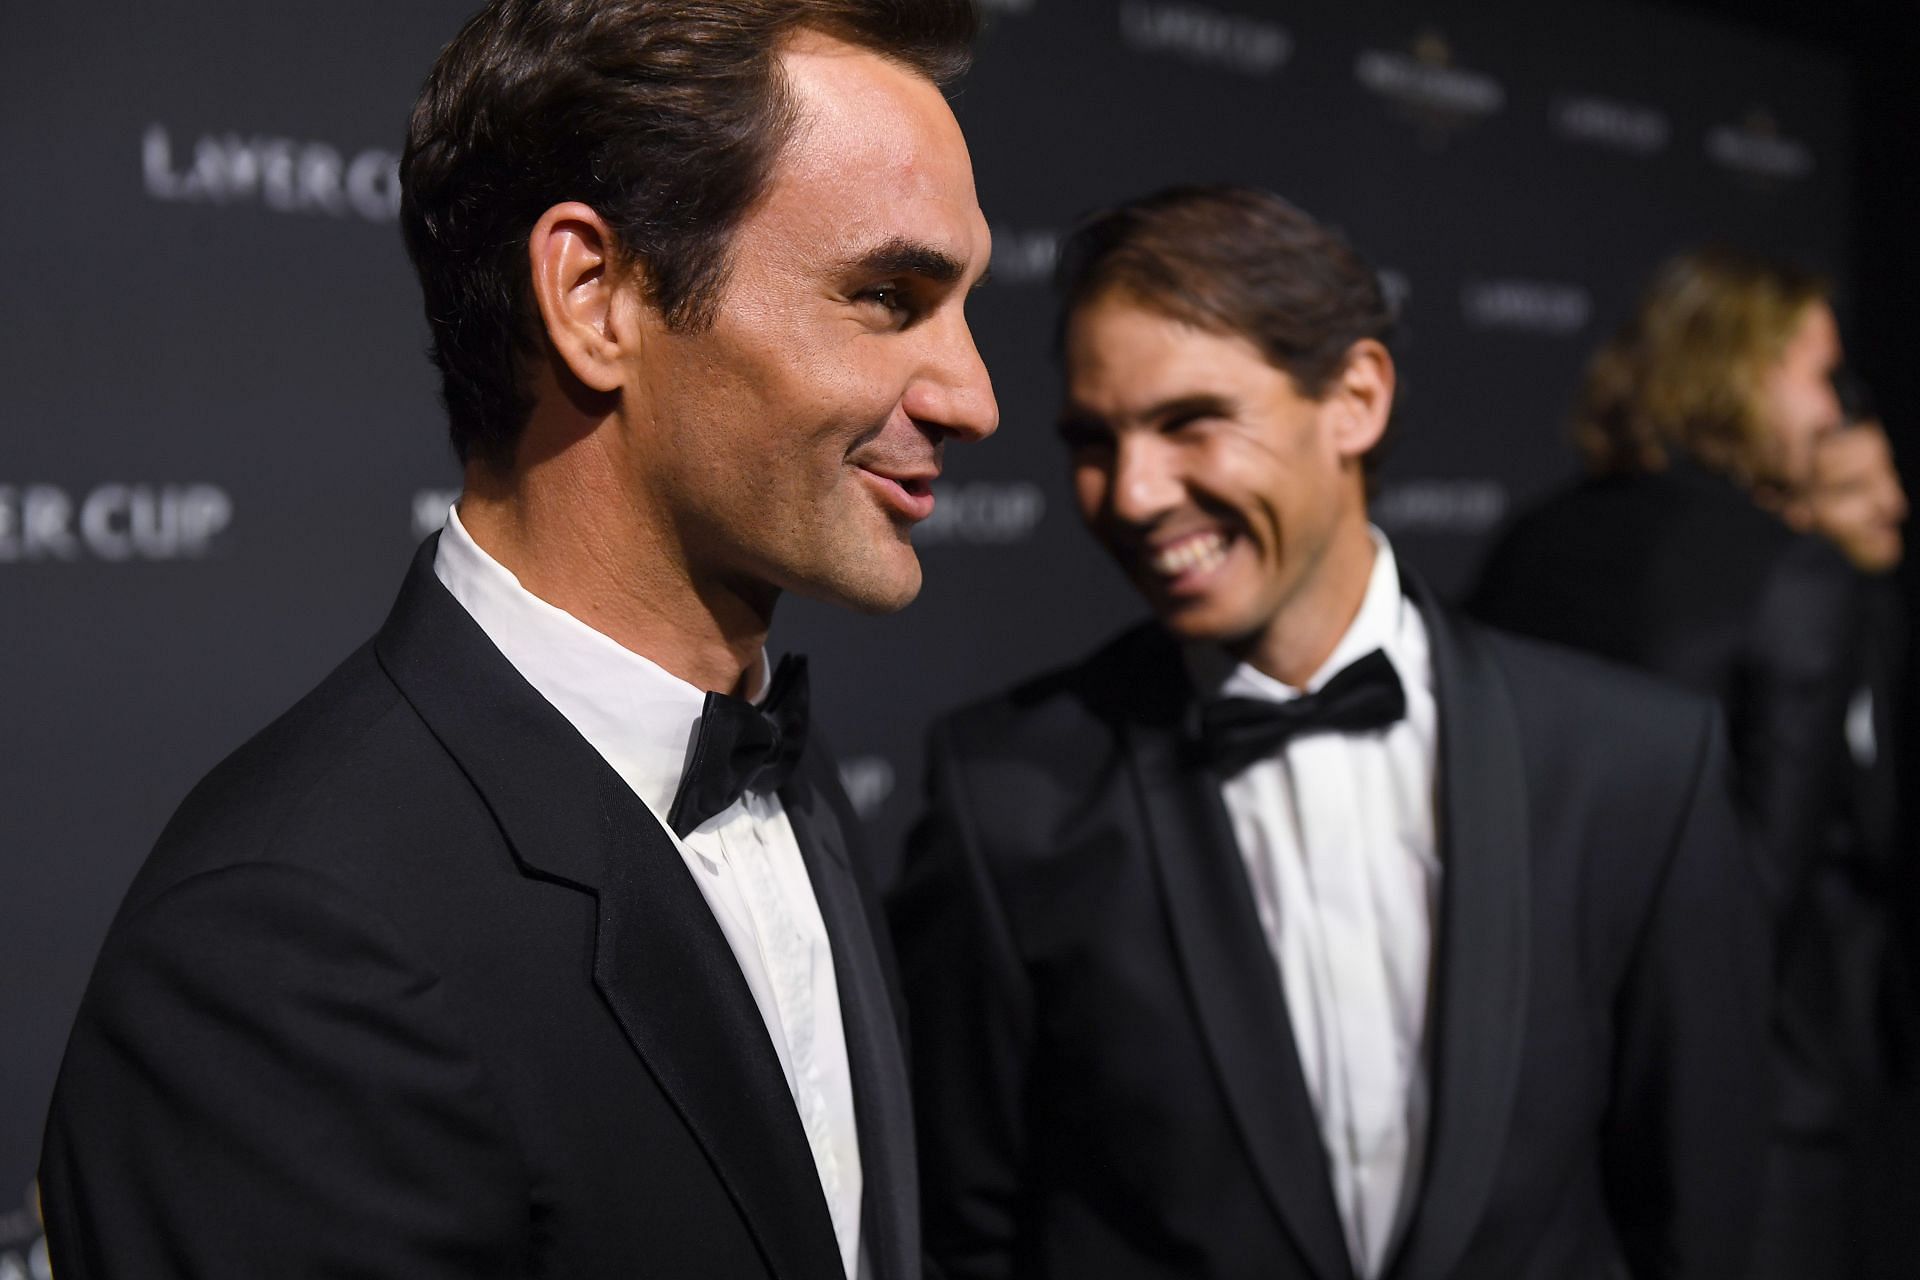 Roger Federer (left) and Rafael Nadal